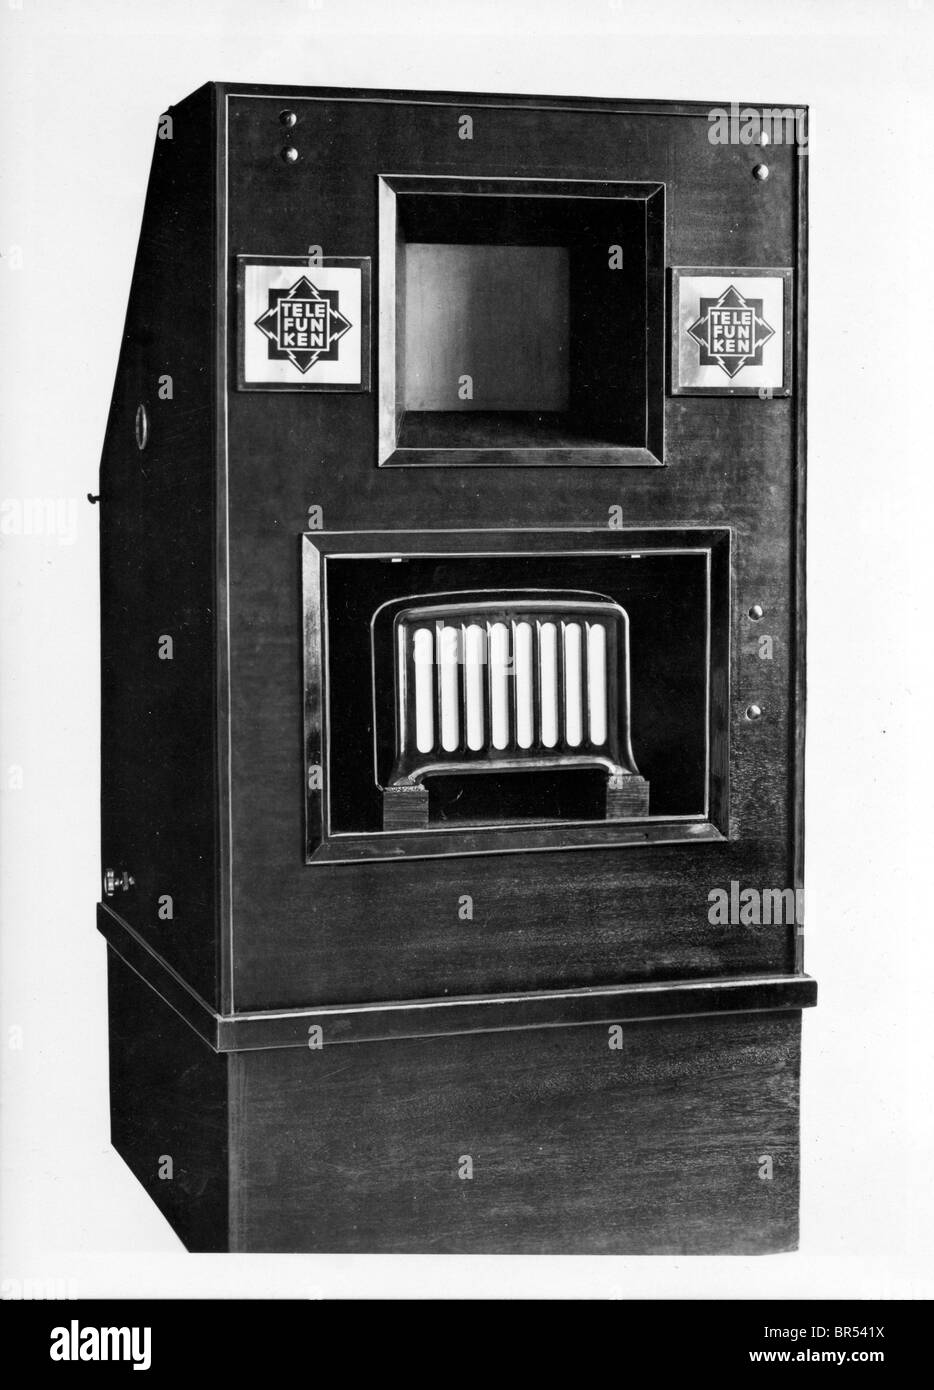 Photographie historique de la télévision Telefunken, VHF, vers 1930 Banque D'Images